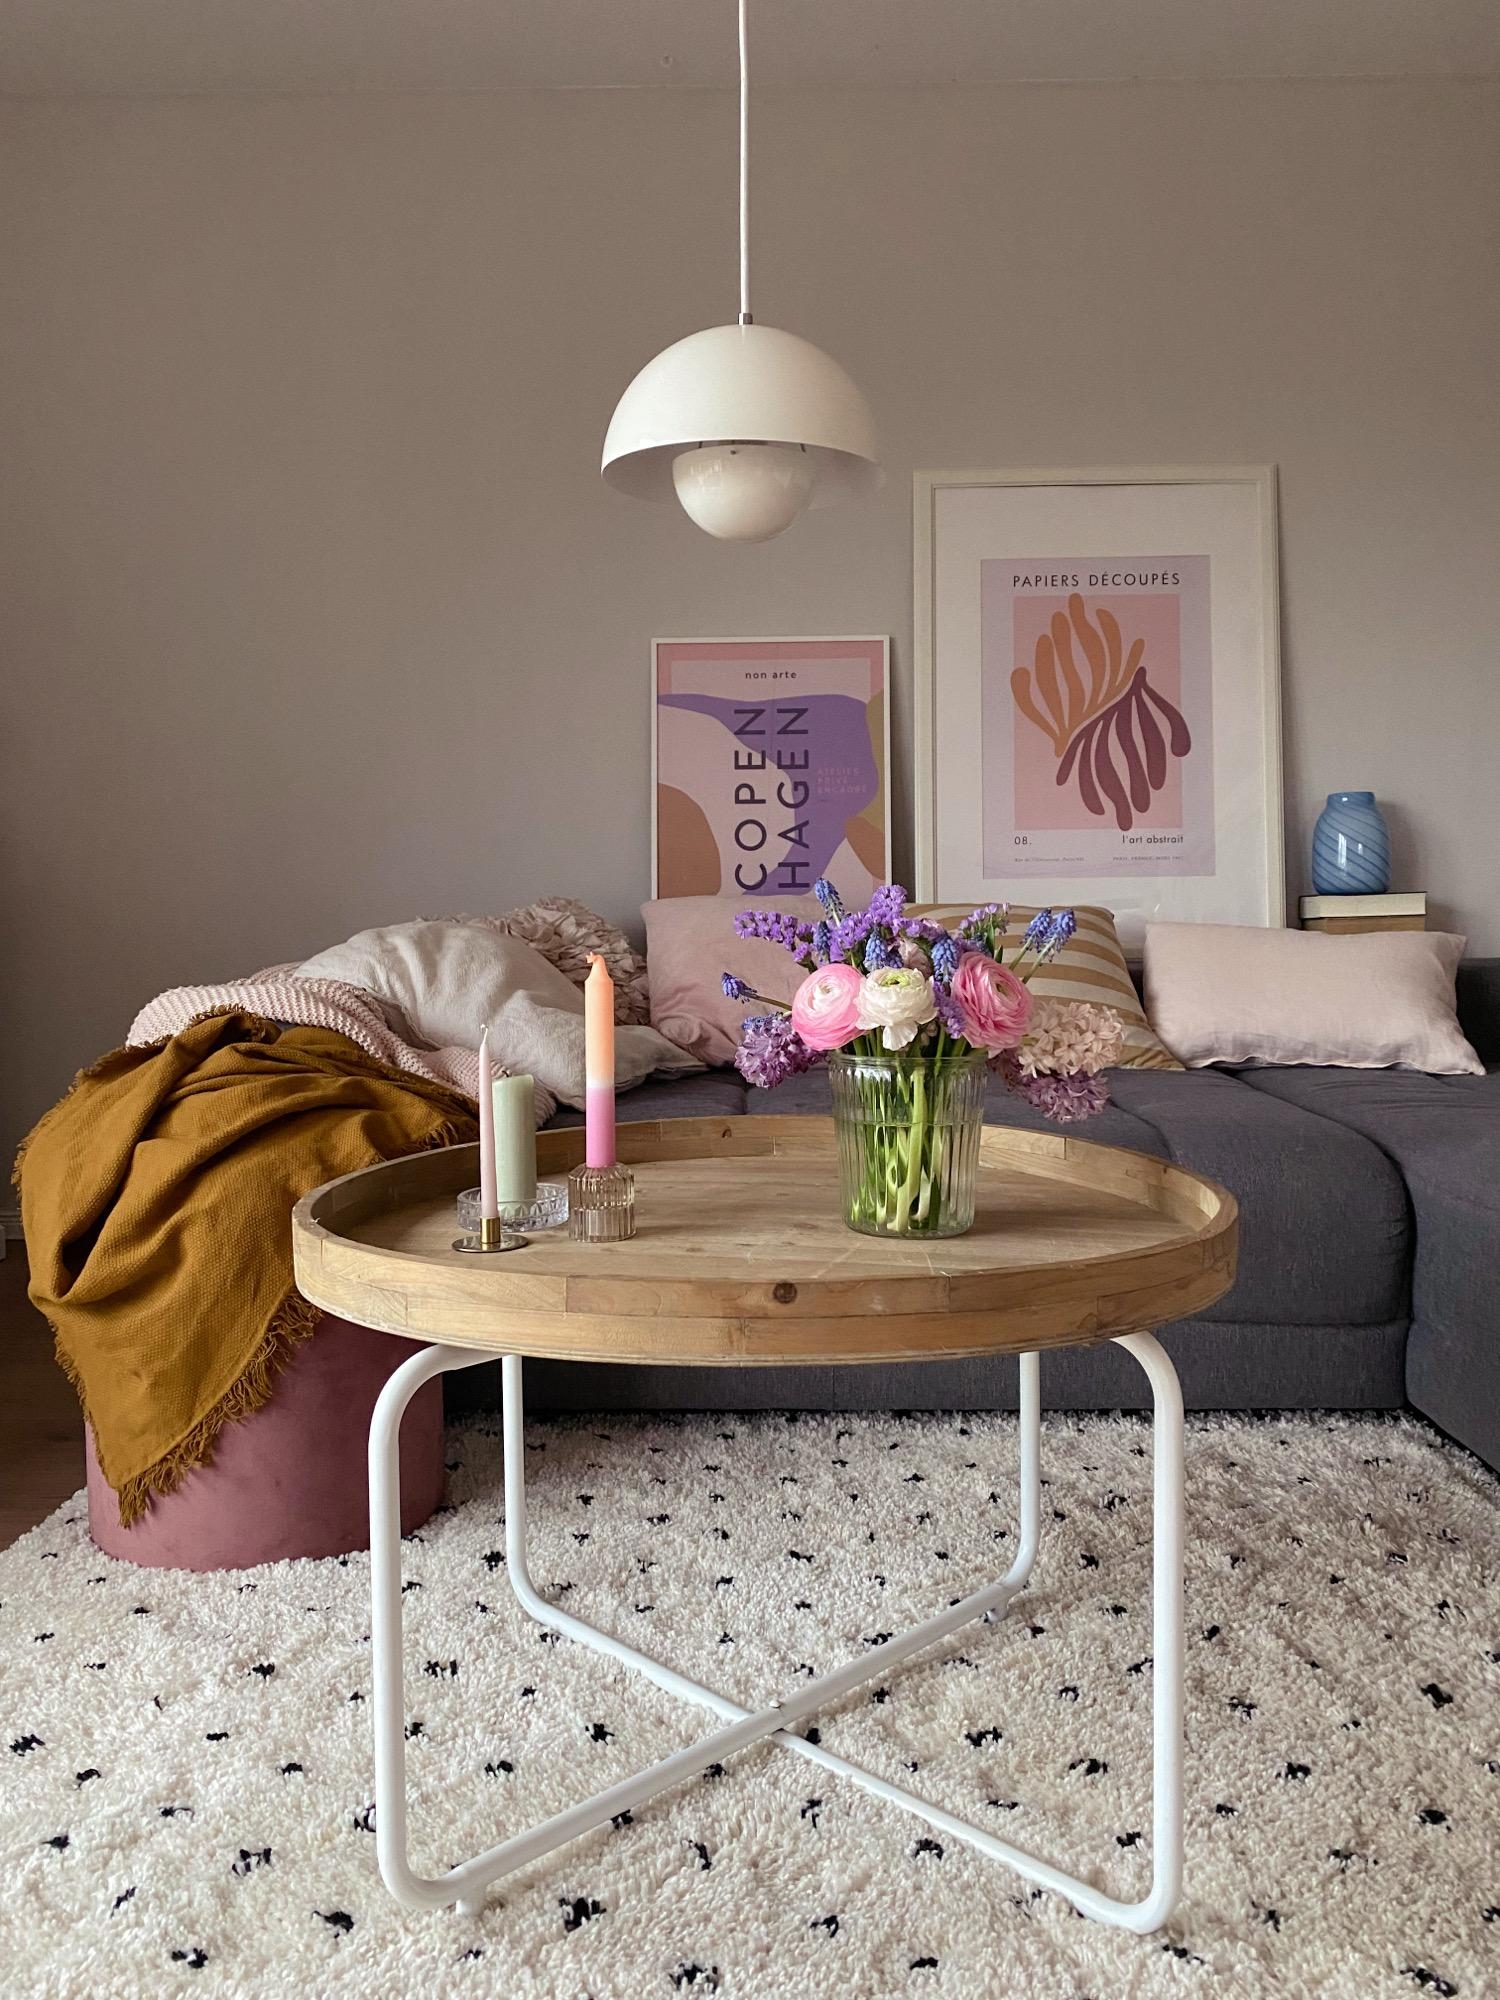 Farbe gegen das grau von draußen...
#colourful#couchstyle#freshflowers#wohnzimmer#cozyliving#springvibes